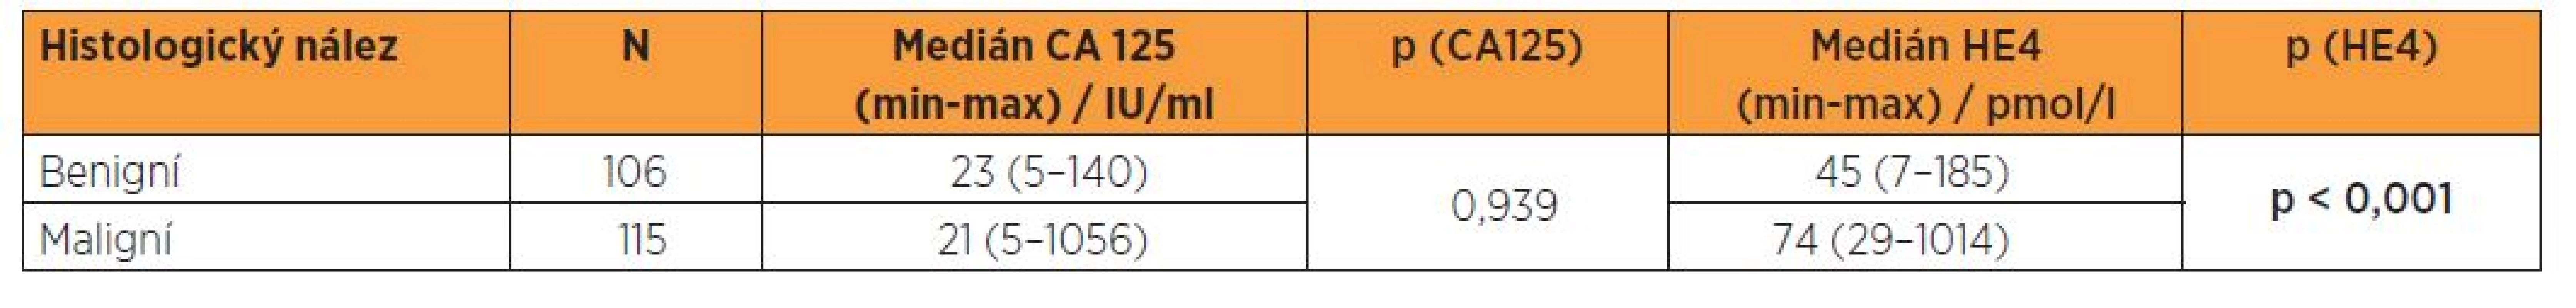 Sérová hladina CA 125 a HE4 ve vztahu k histologickému nálezu - t-test (meziskupinová porovnání)